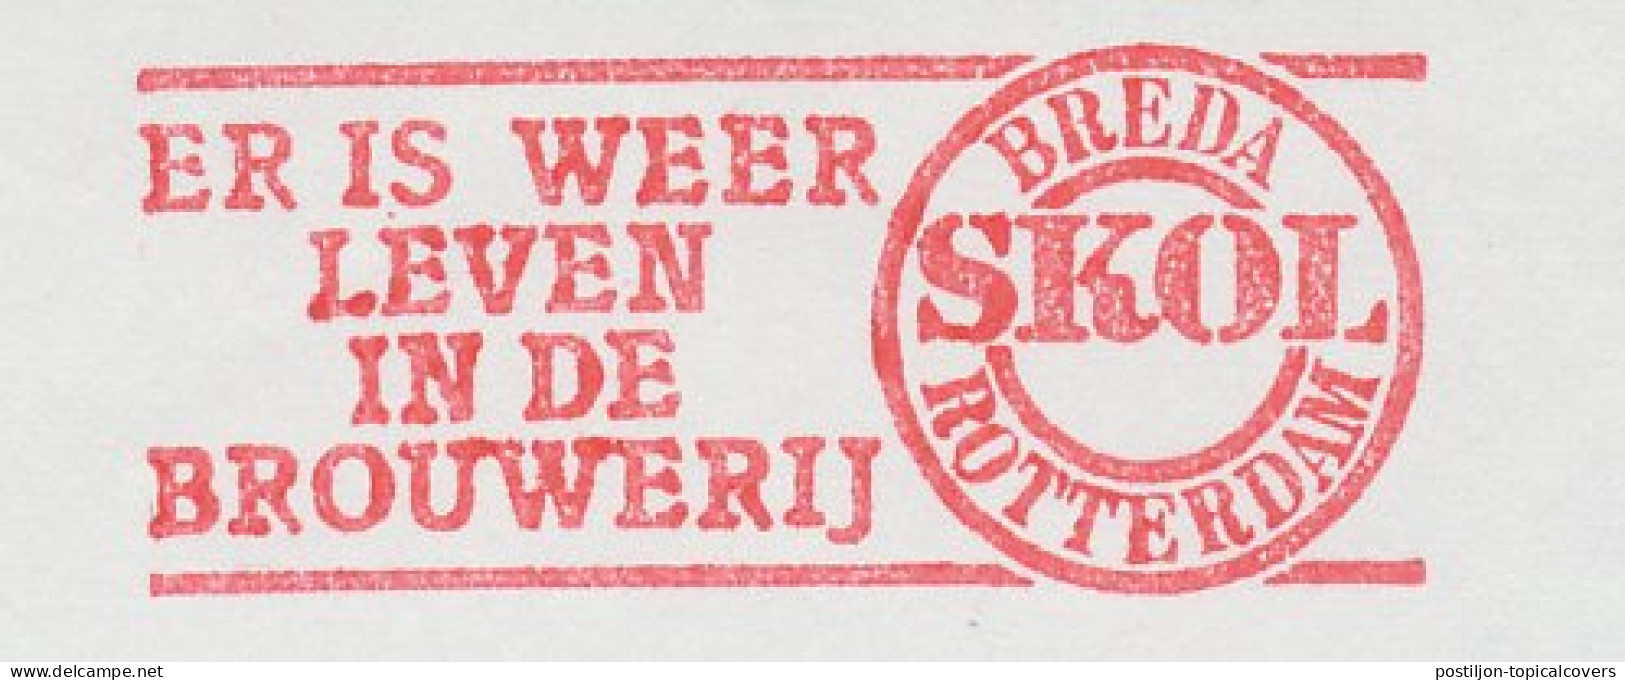 Meter Cut Netherlands 1983 Beer - Skol - Brewery - Wein & Alkohol